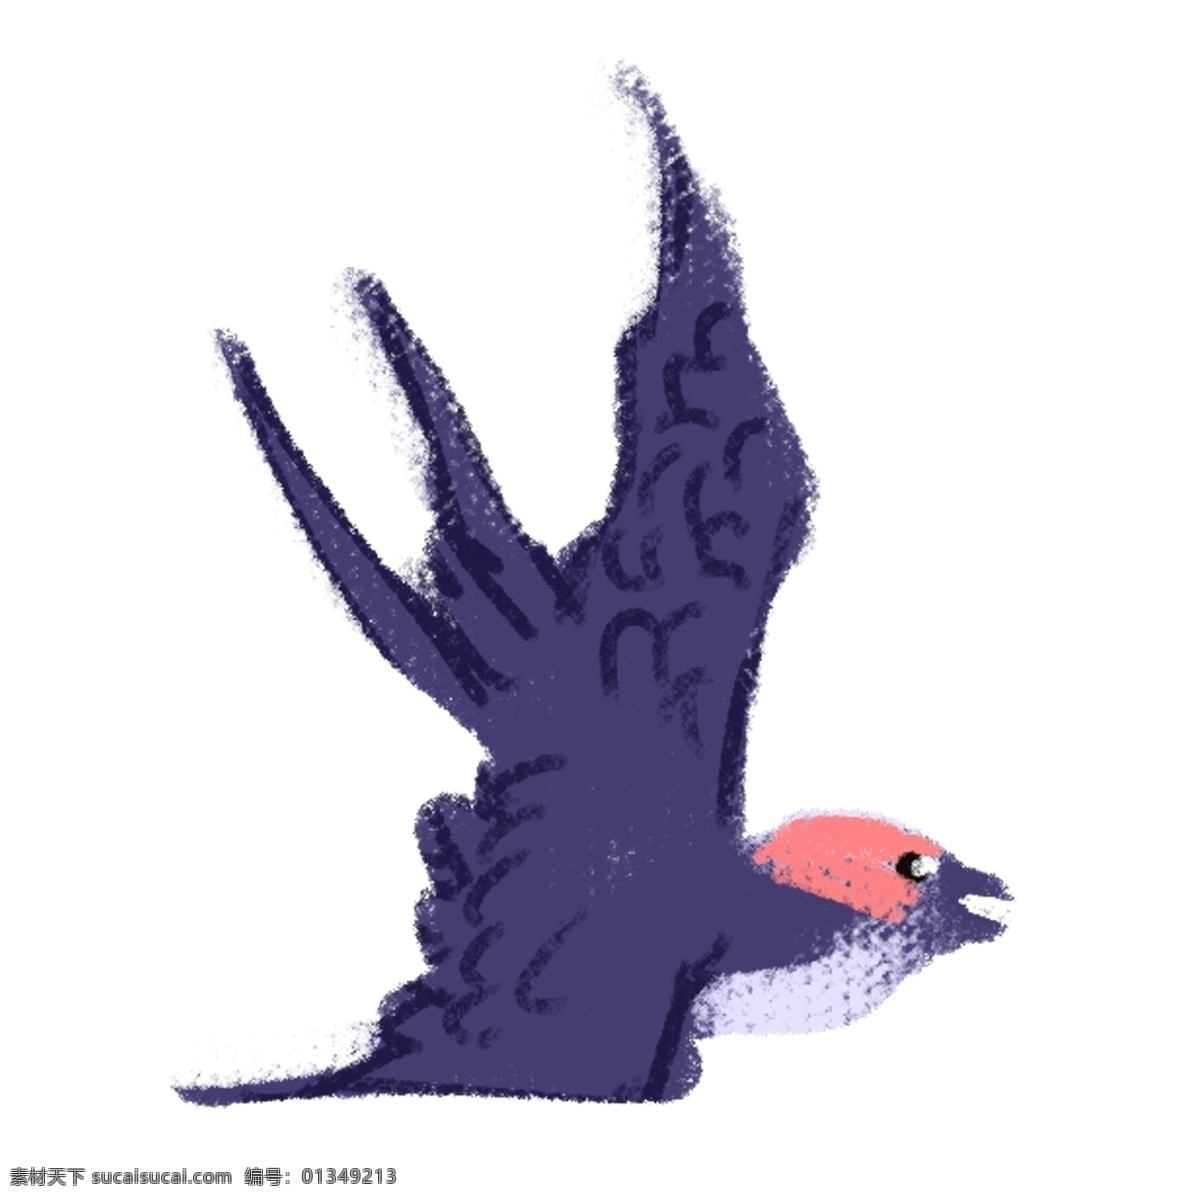 手绘 卡通 小燕子 元素 紫色 动物 透明素材 装饰元素 可爱风